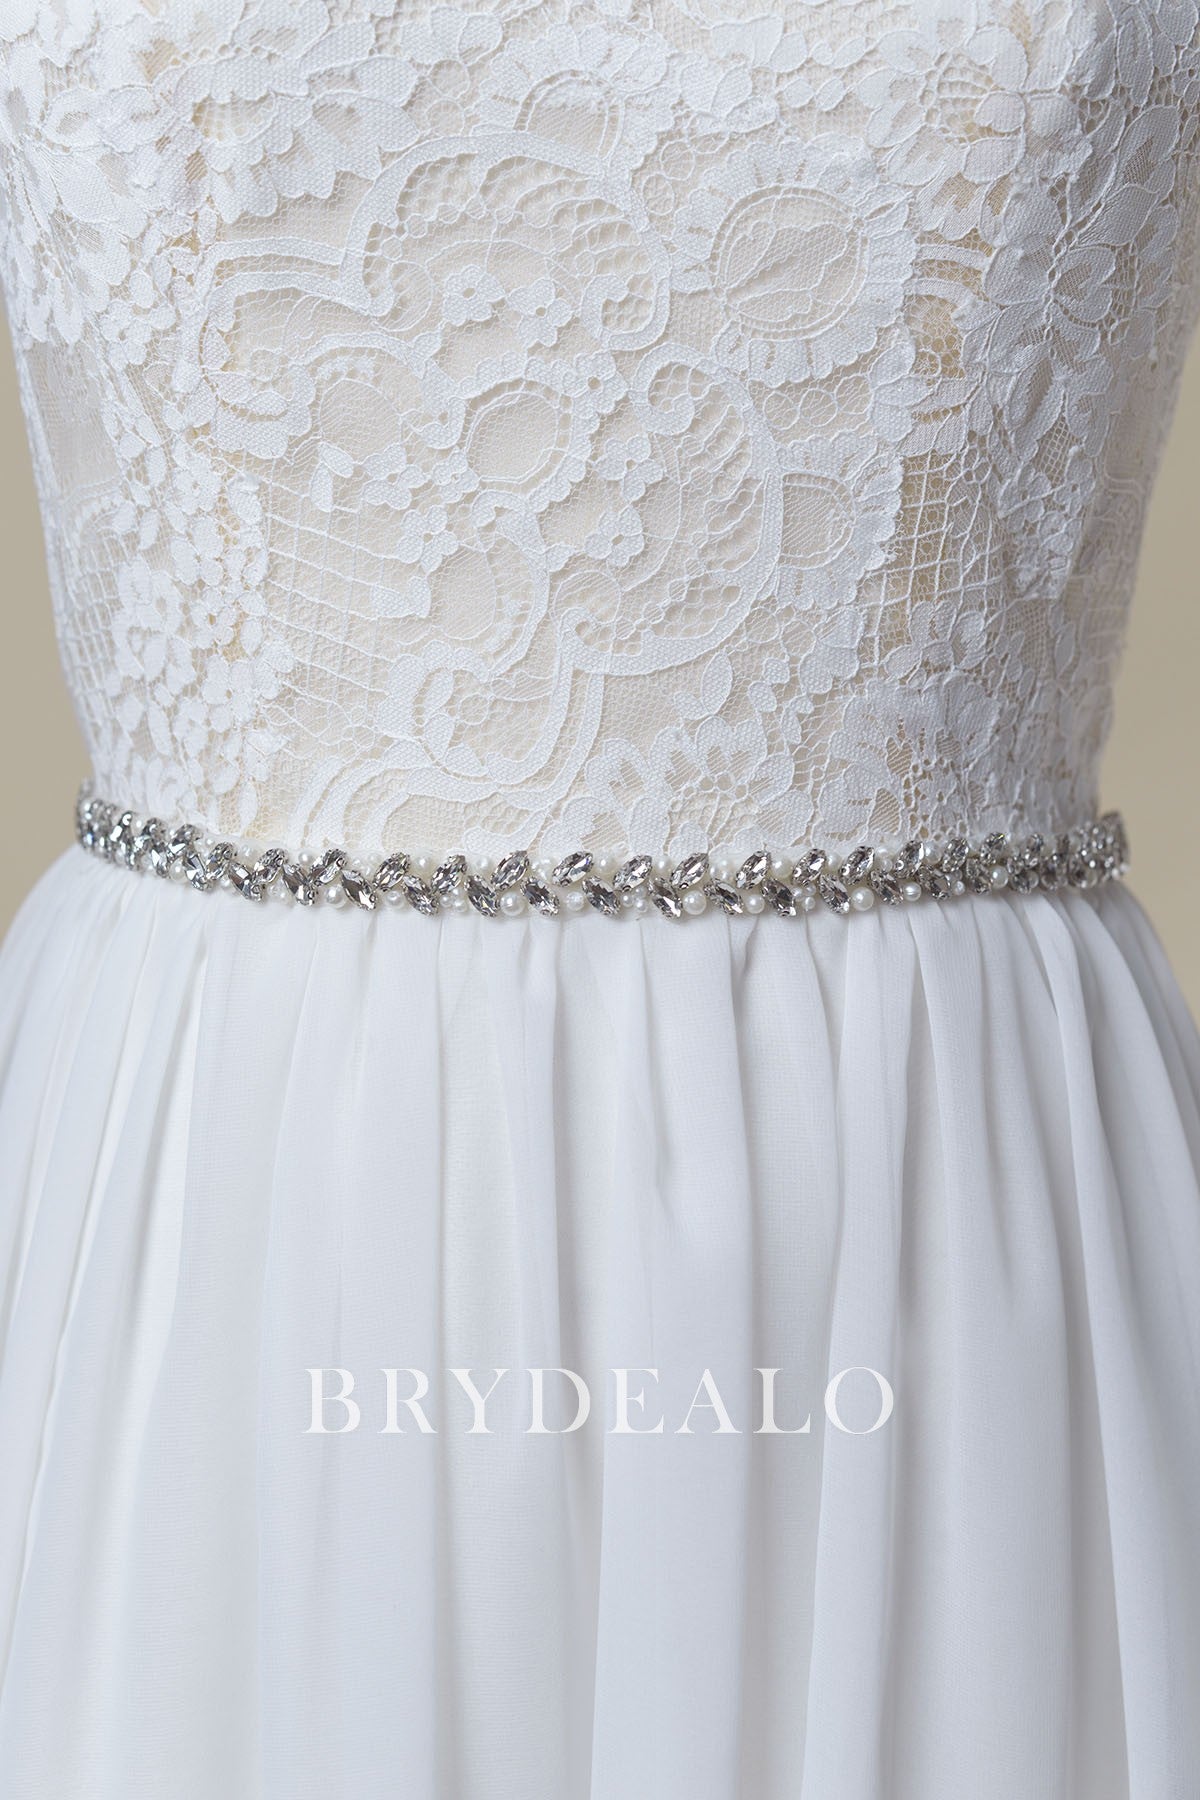 Elaborate Crystals Pearls Ties Bridal Belt